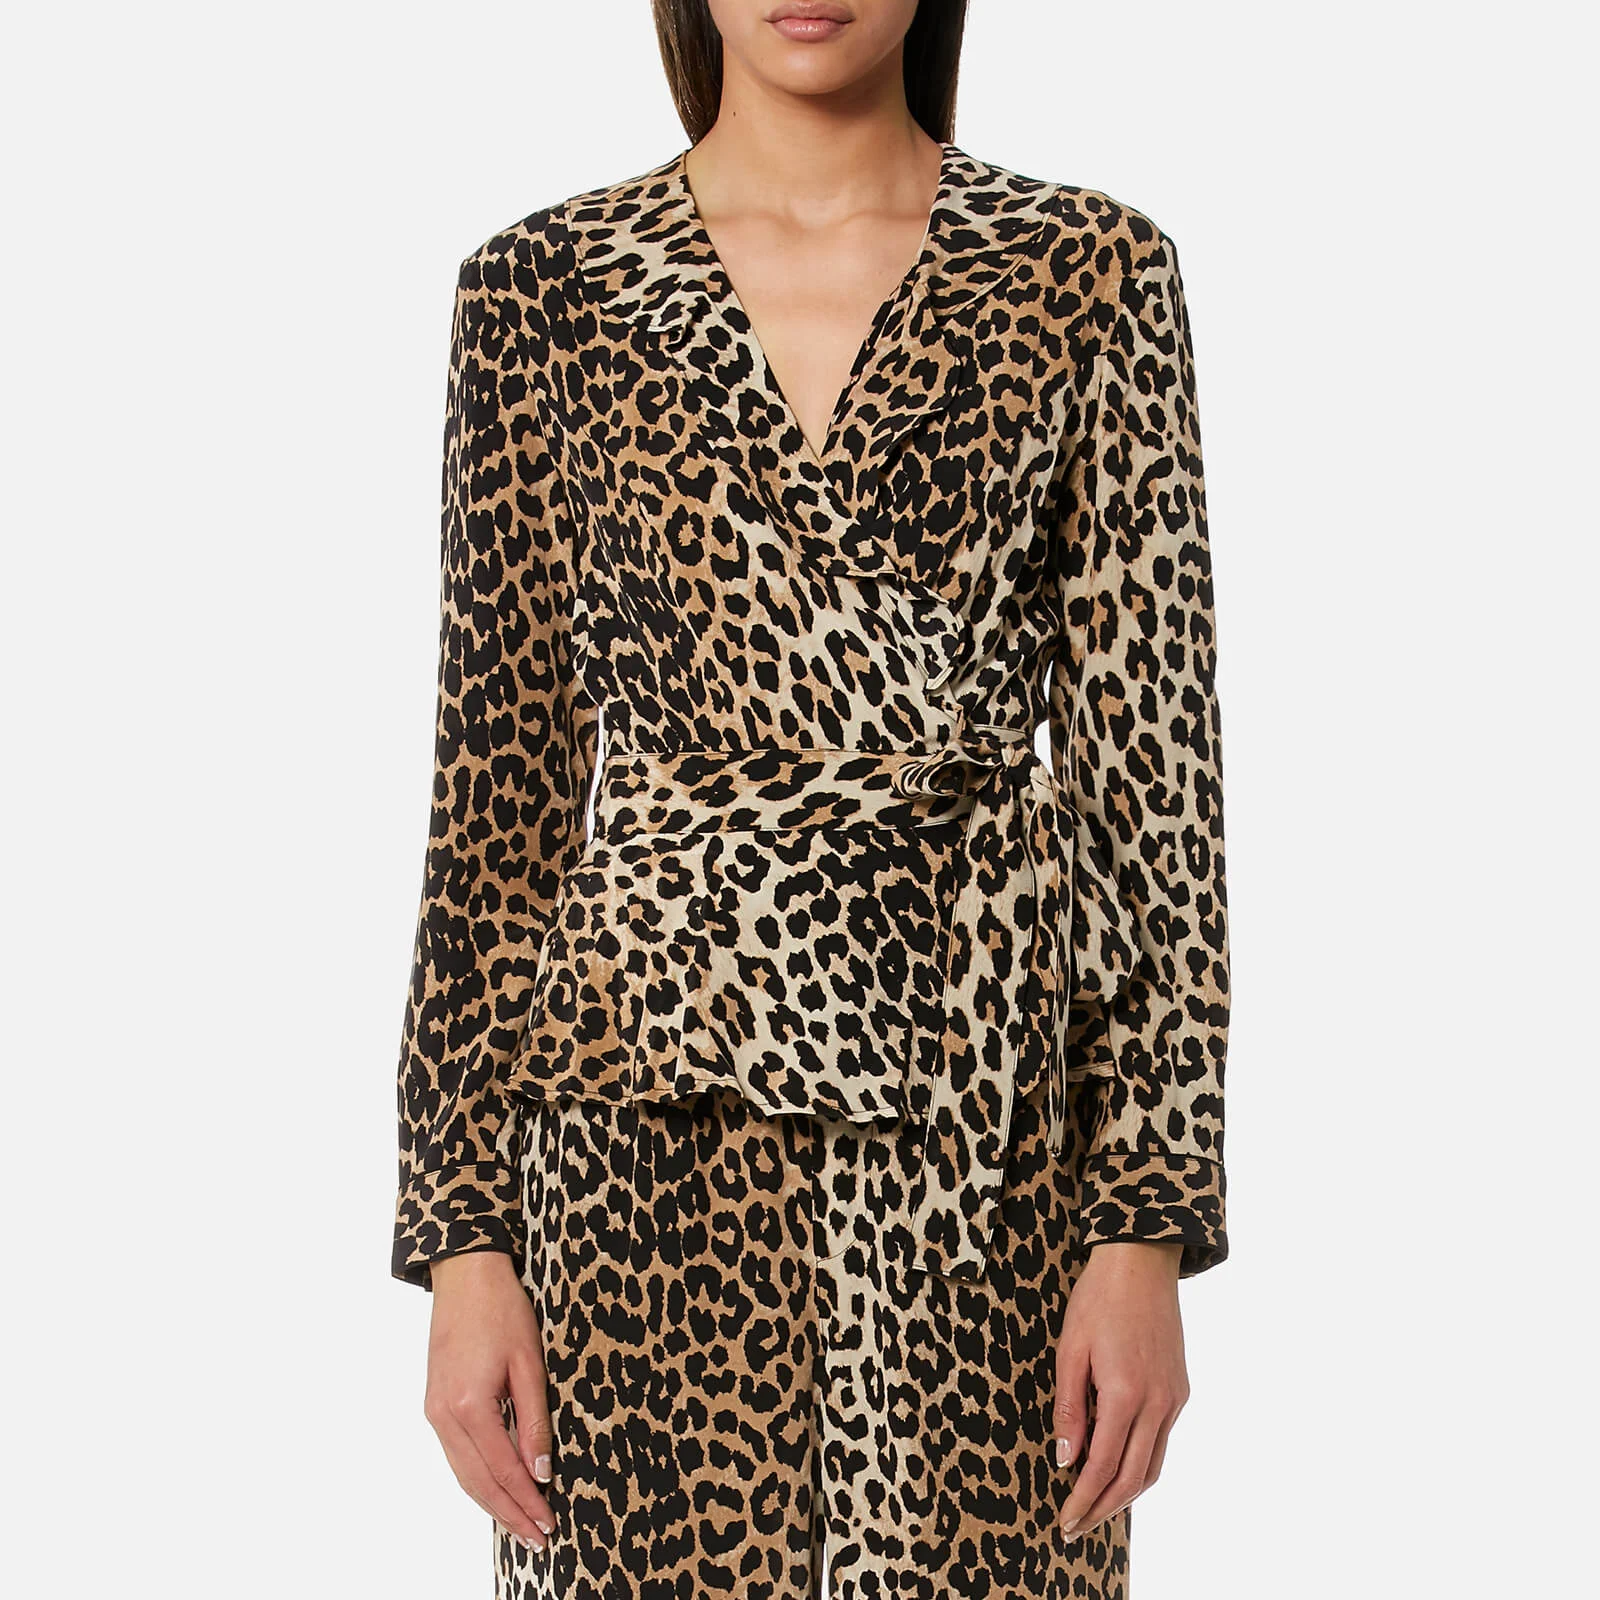 Ganni Women's Fayette Silk Top - Leopard Image 1